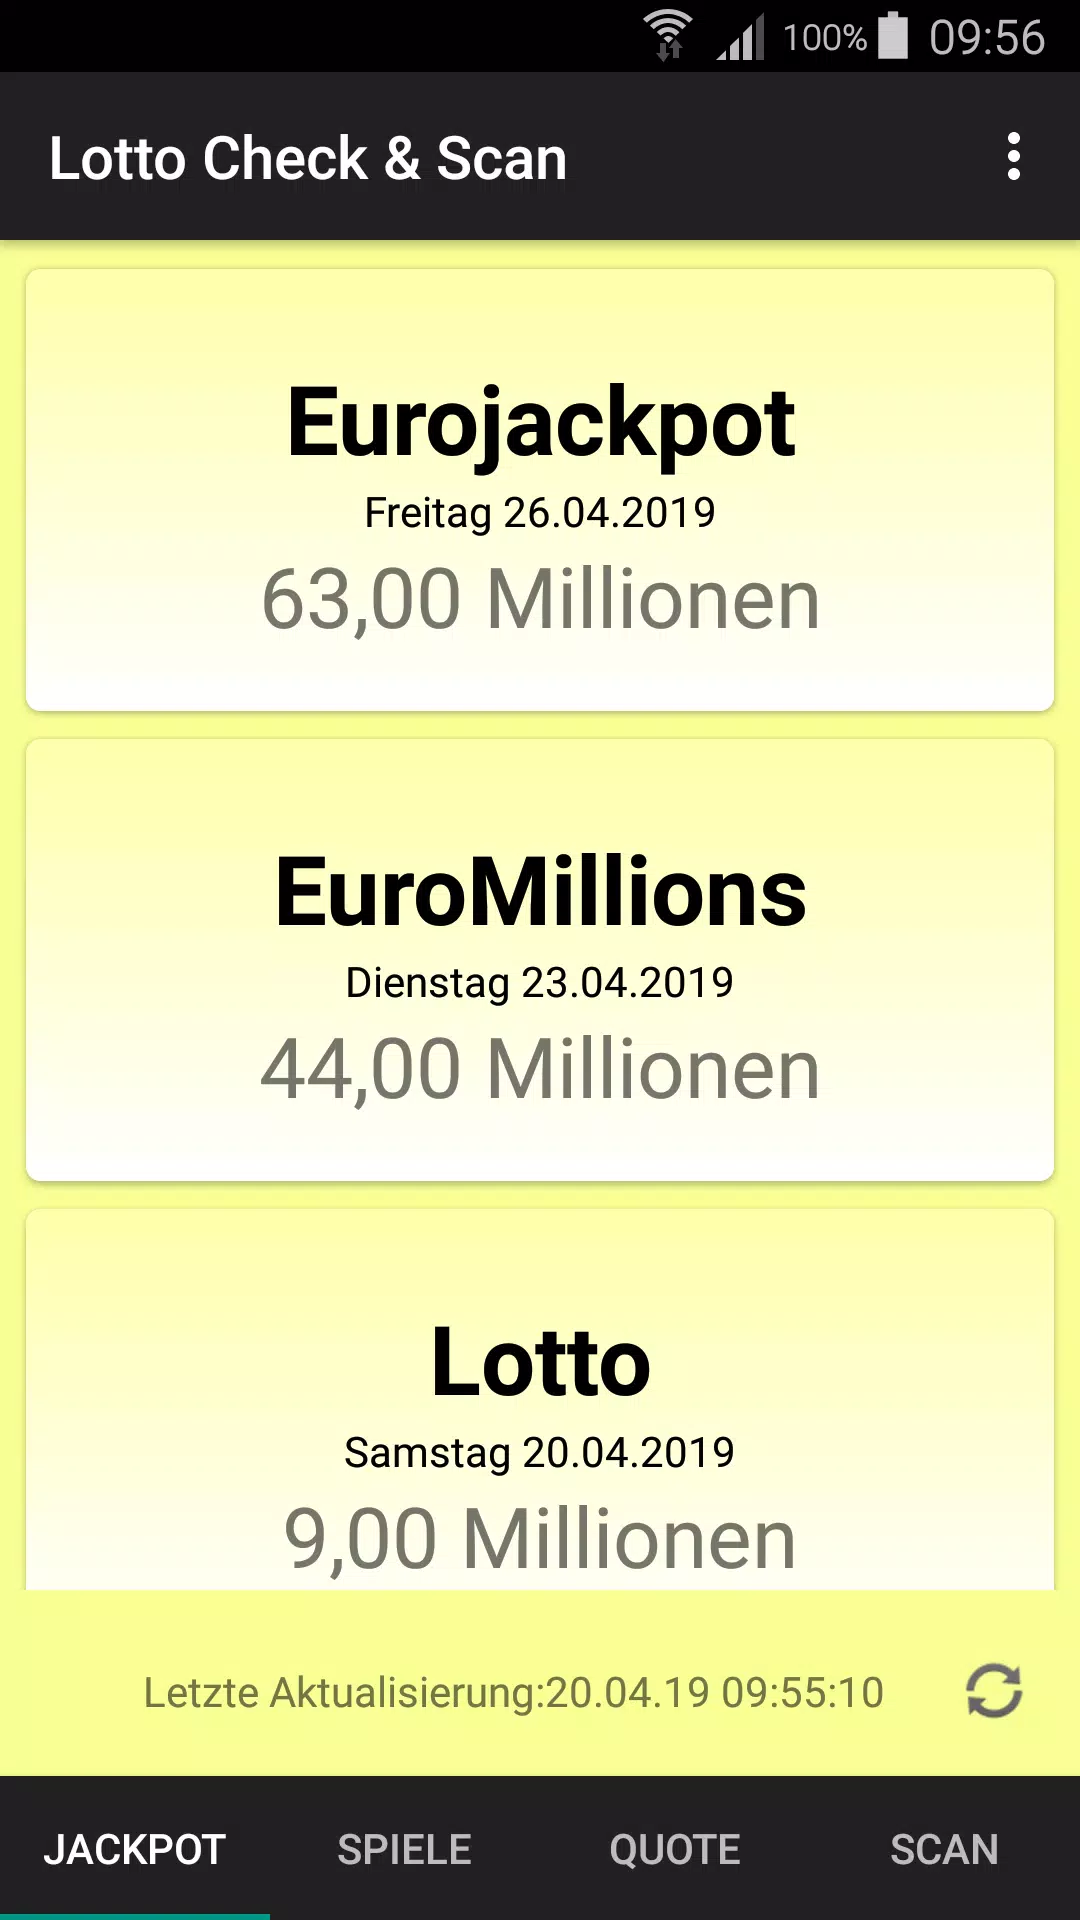 Lotto Check & Scan APK für Android herunterladen